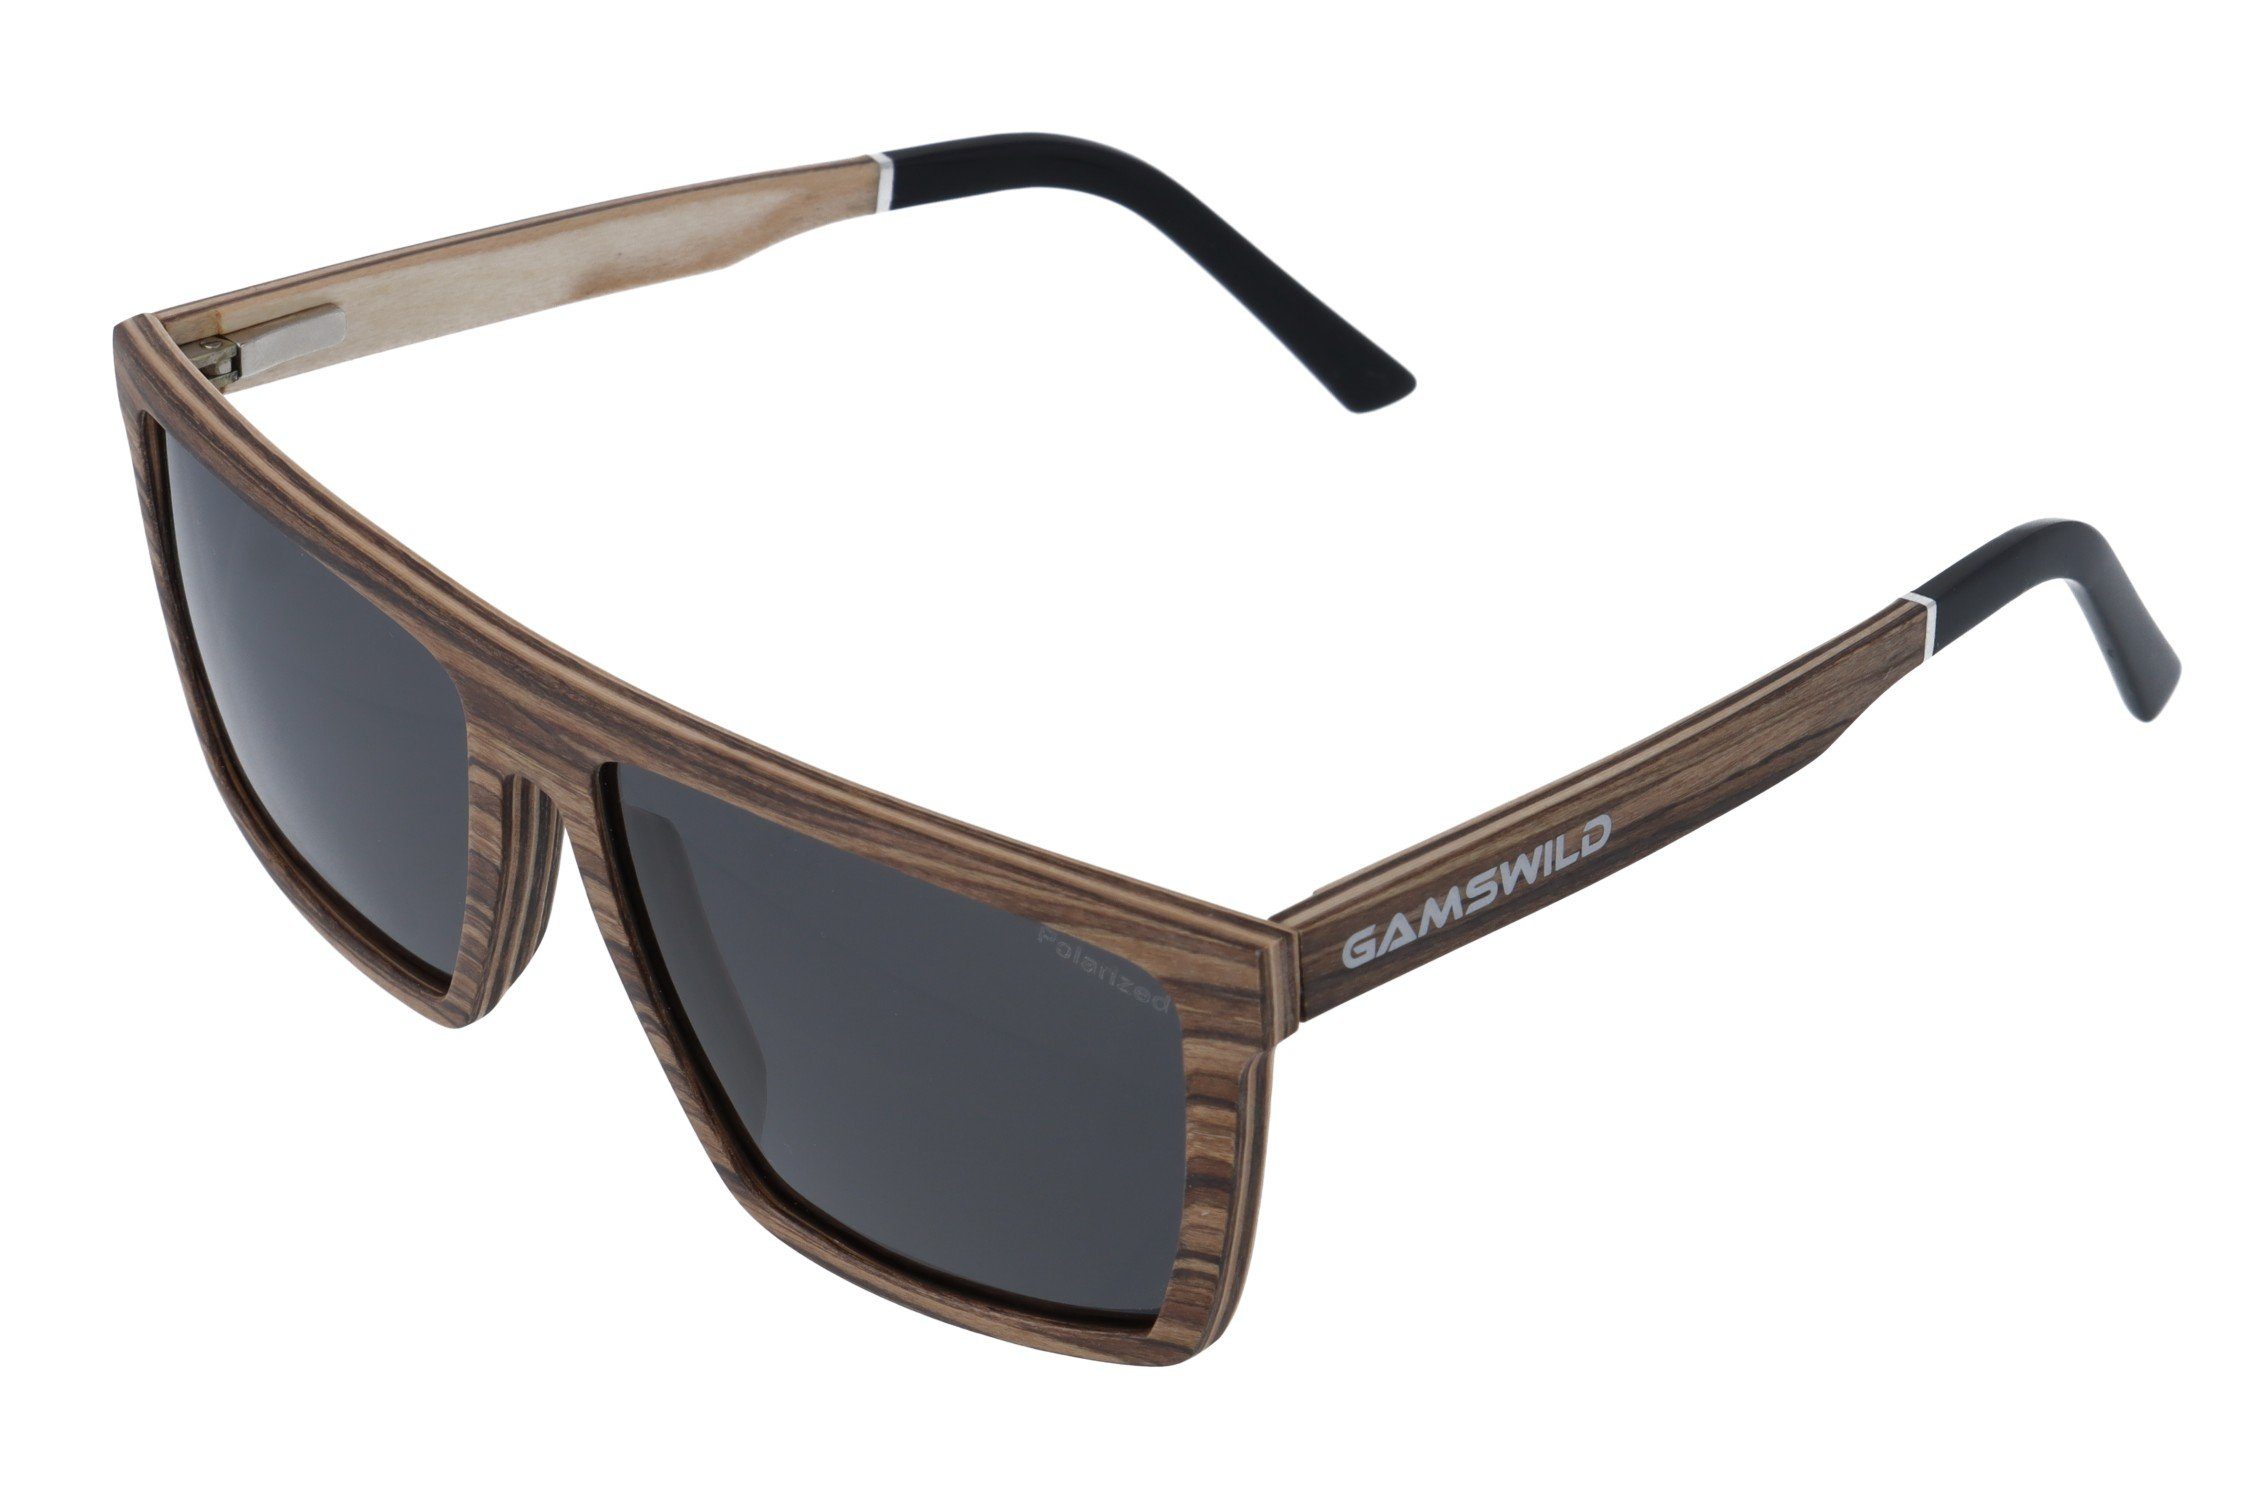 Gamswild braun, Unisex, Herren schwarz Sonnenbrille Damen polarisierte WM0010 Holzbrille GAMSSTYLE Gläser